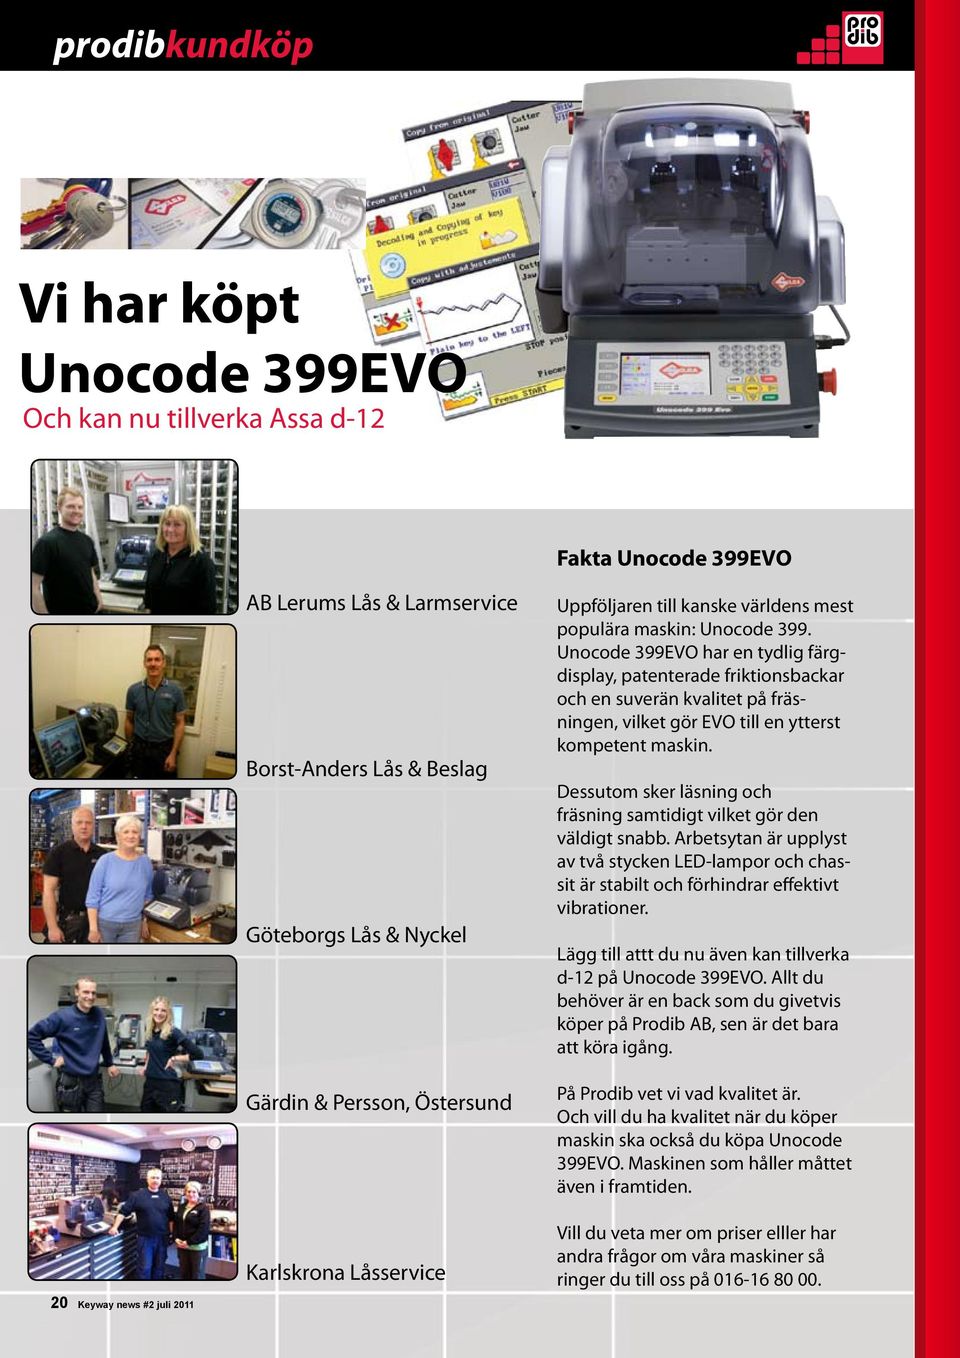 Unocode 399EVO har en tydlig färgdisplay, patenterade friktionsbackar och en suverän kvalitet på fräsningen, vilket gör EVO till en ytterst kompetent maskin.